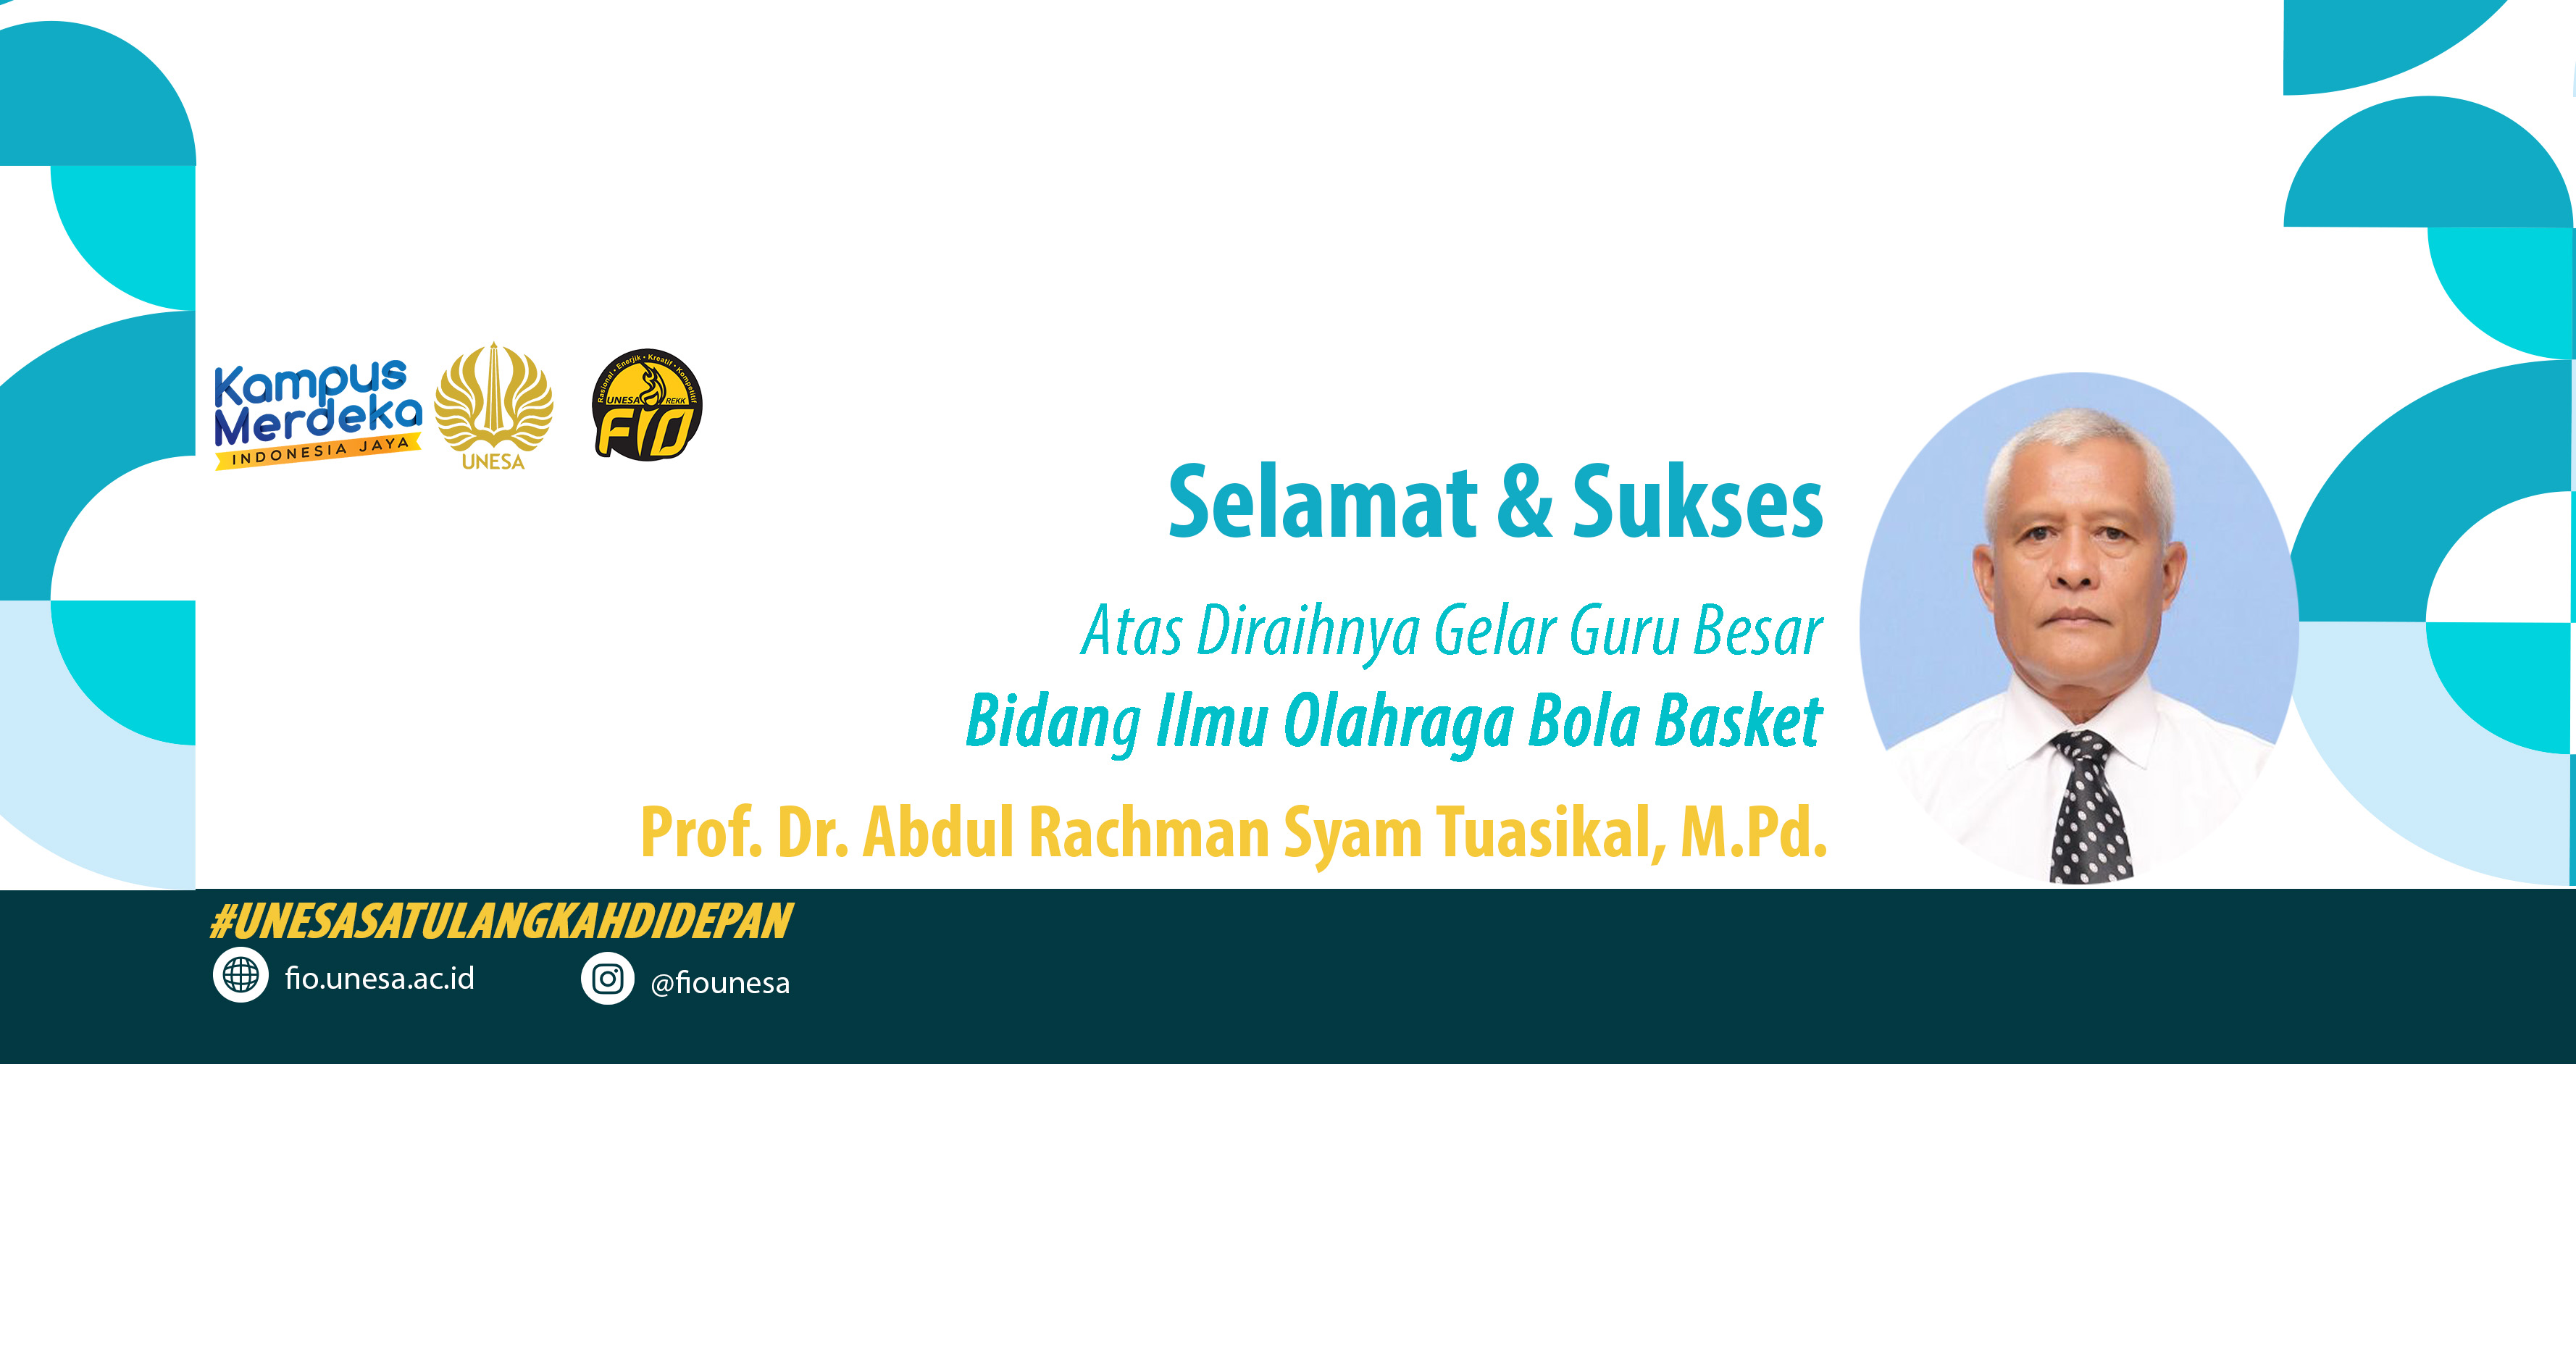 Ucapan Selamat dan Sukses Prof. Dr. Abdul Rachman Syam Tuasikal, M.Pd.